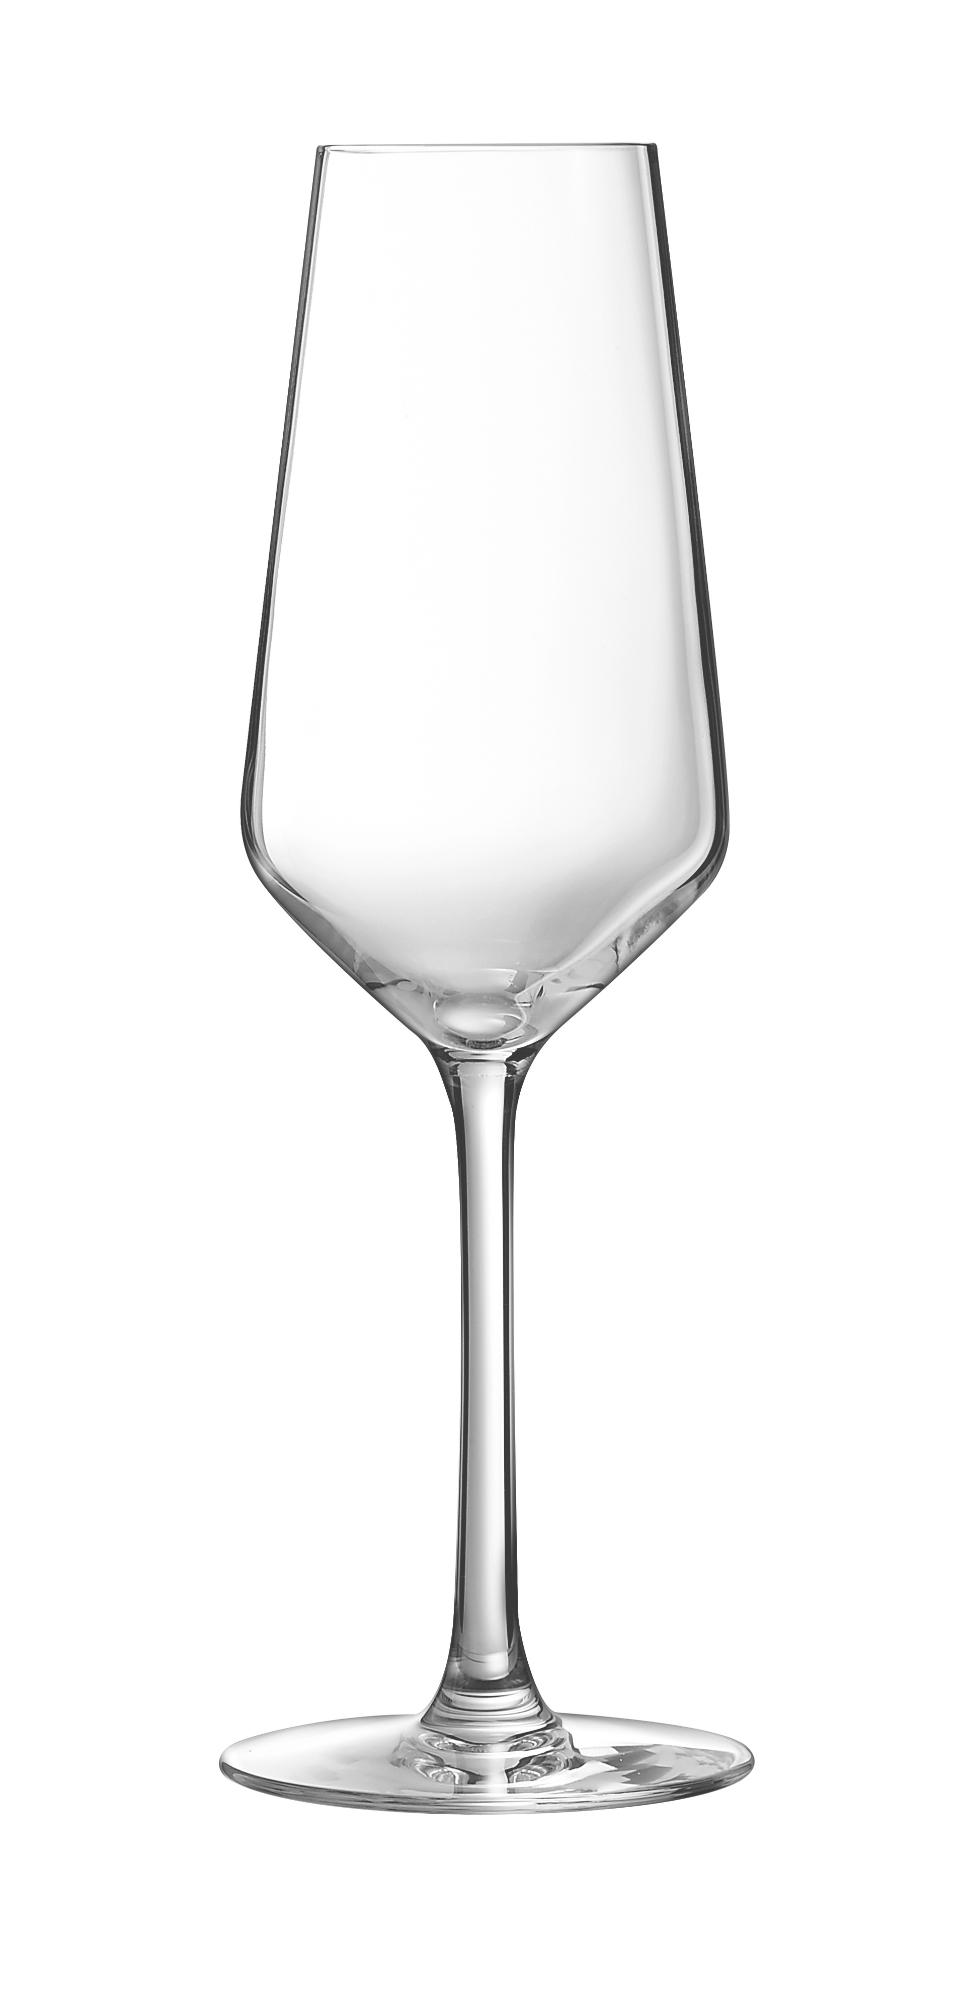 Vina Juliette champagne glass, 230ml